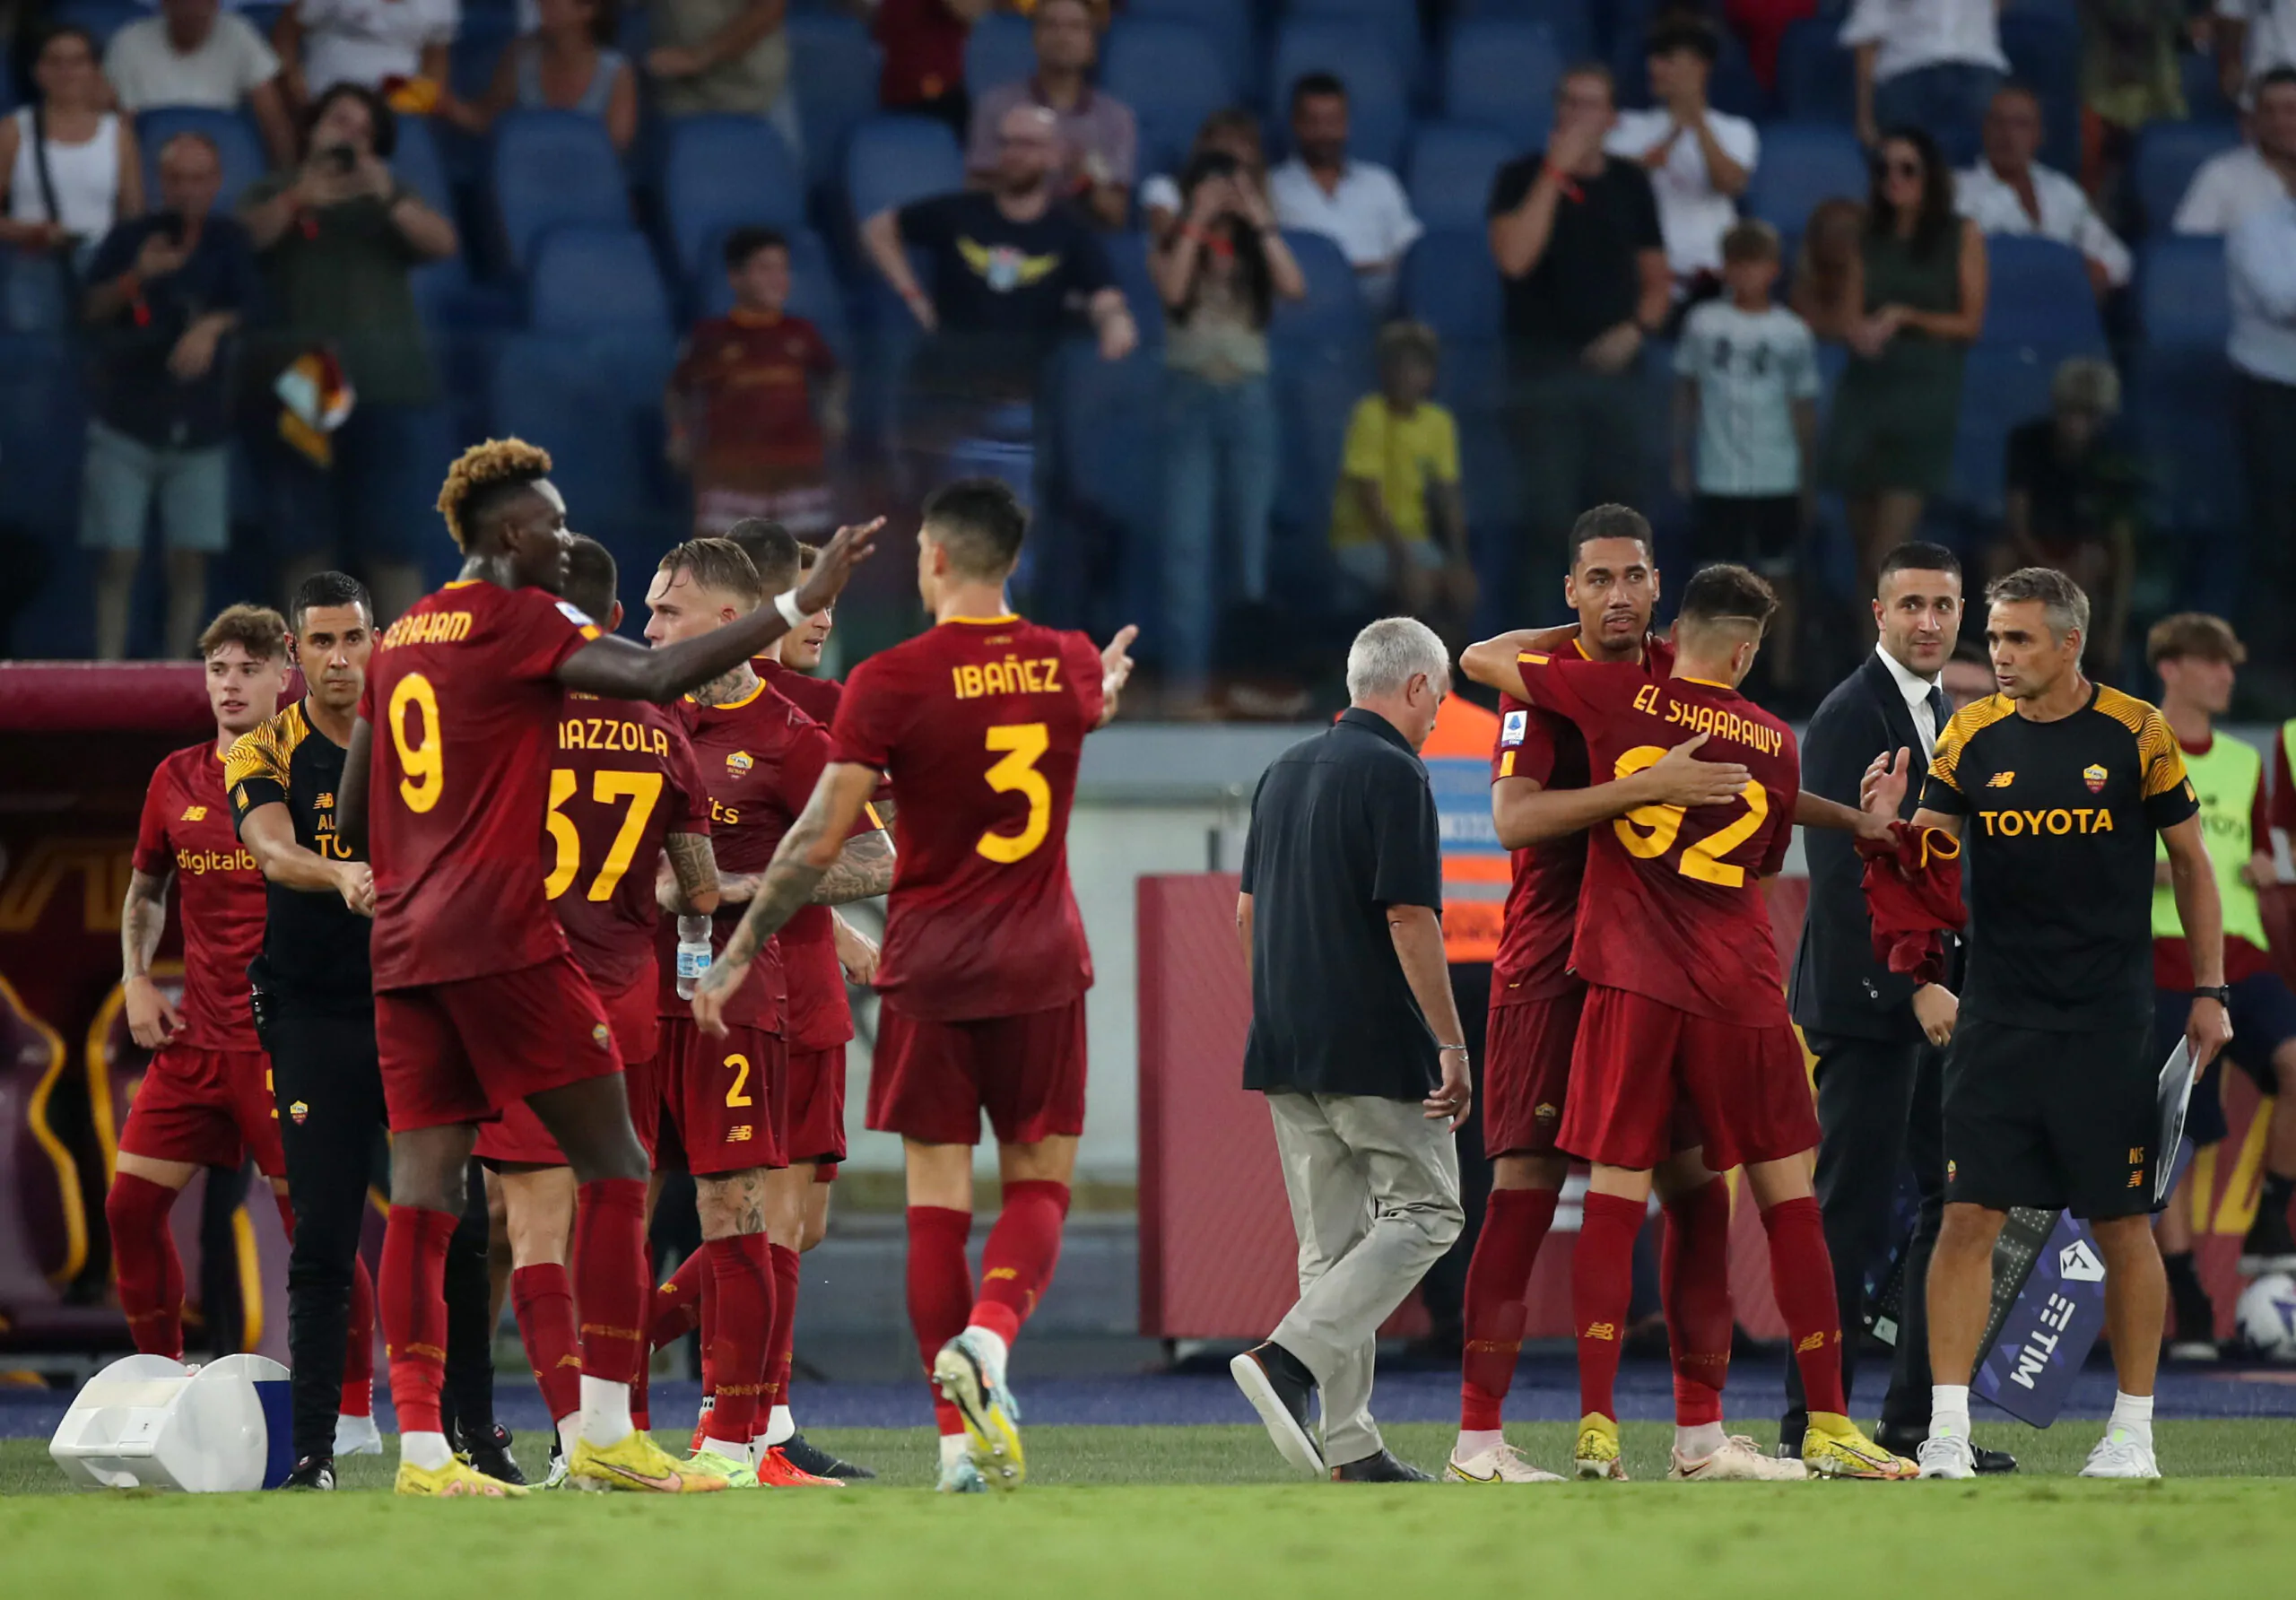 L’ex Roma sui giallorossi: “Se non vince sarà una delusione”, poi la risposta su Dybala